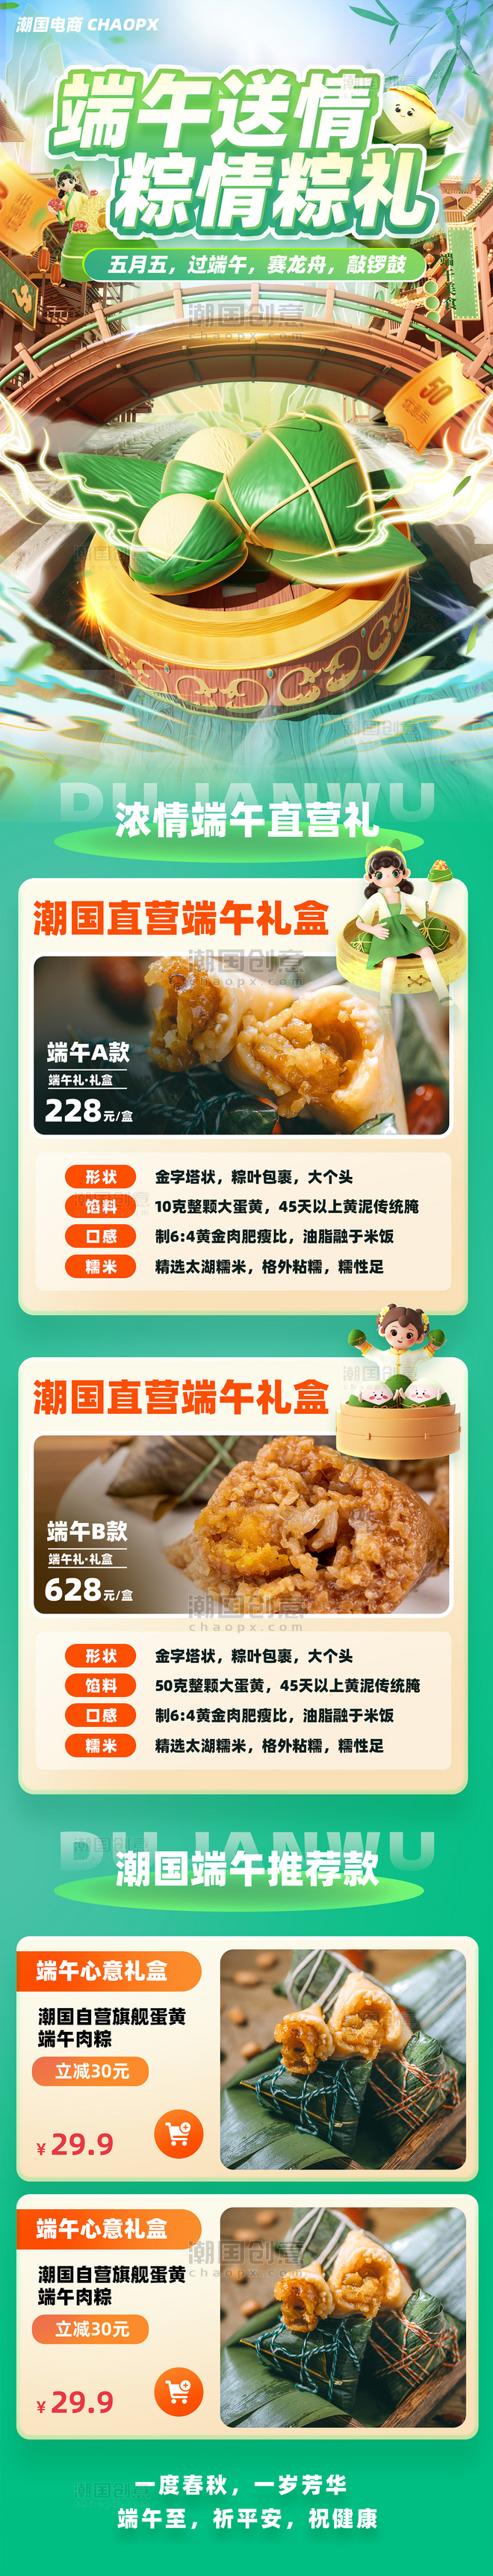 端午端午节粽子电商促销传统节日营销长图